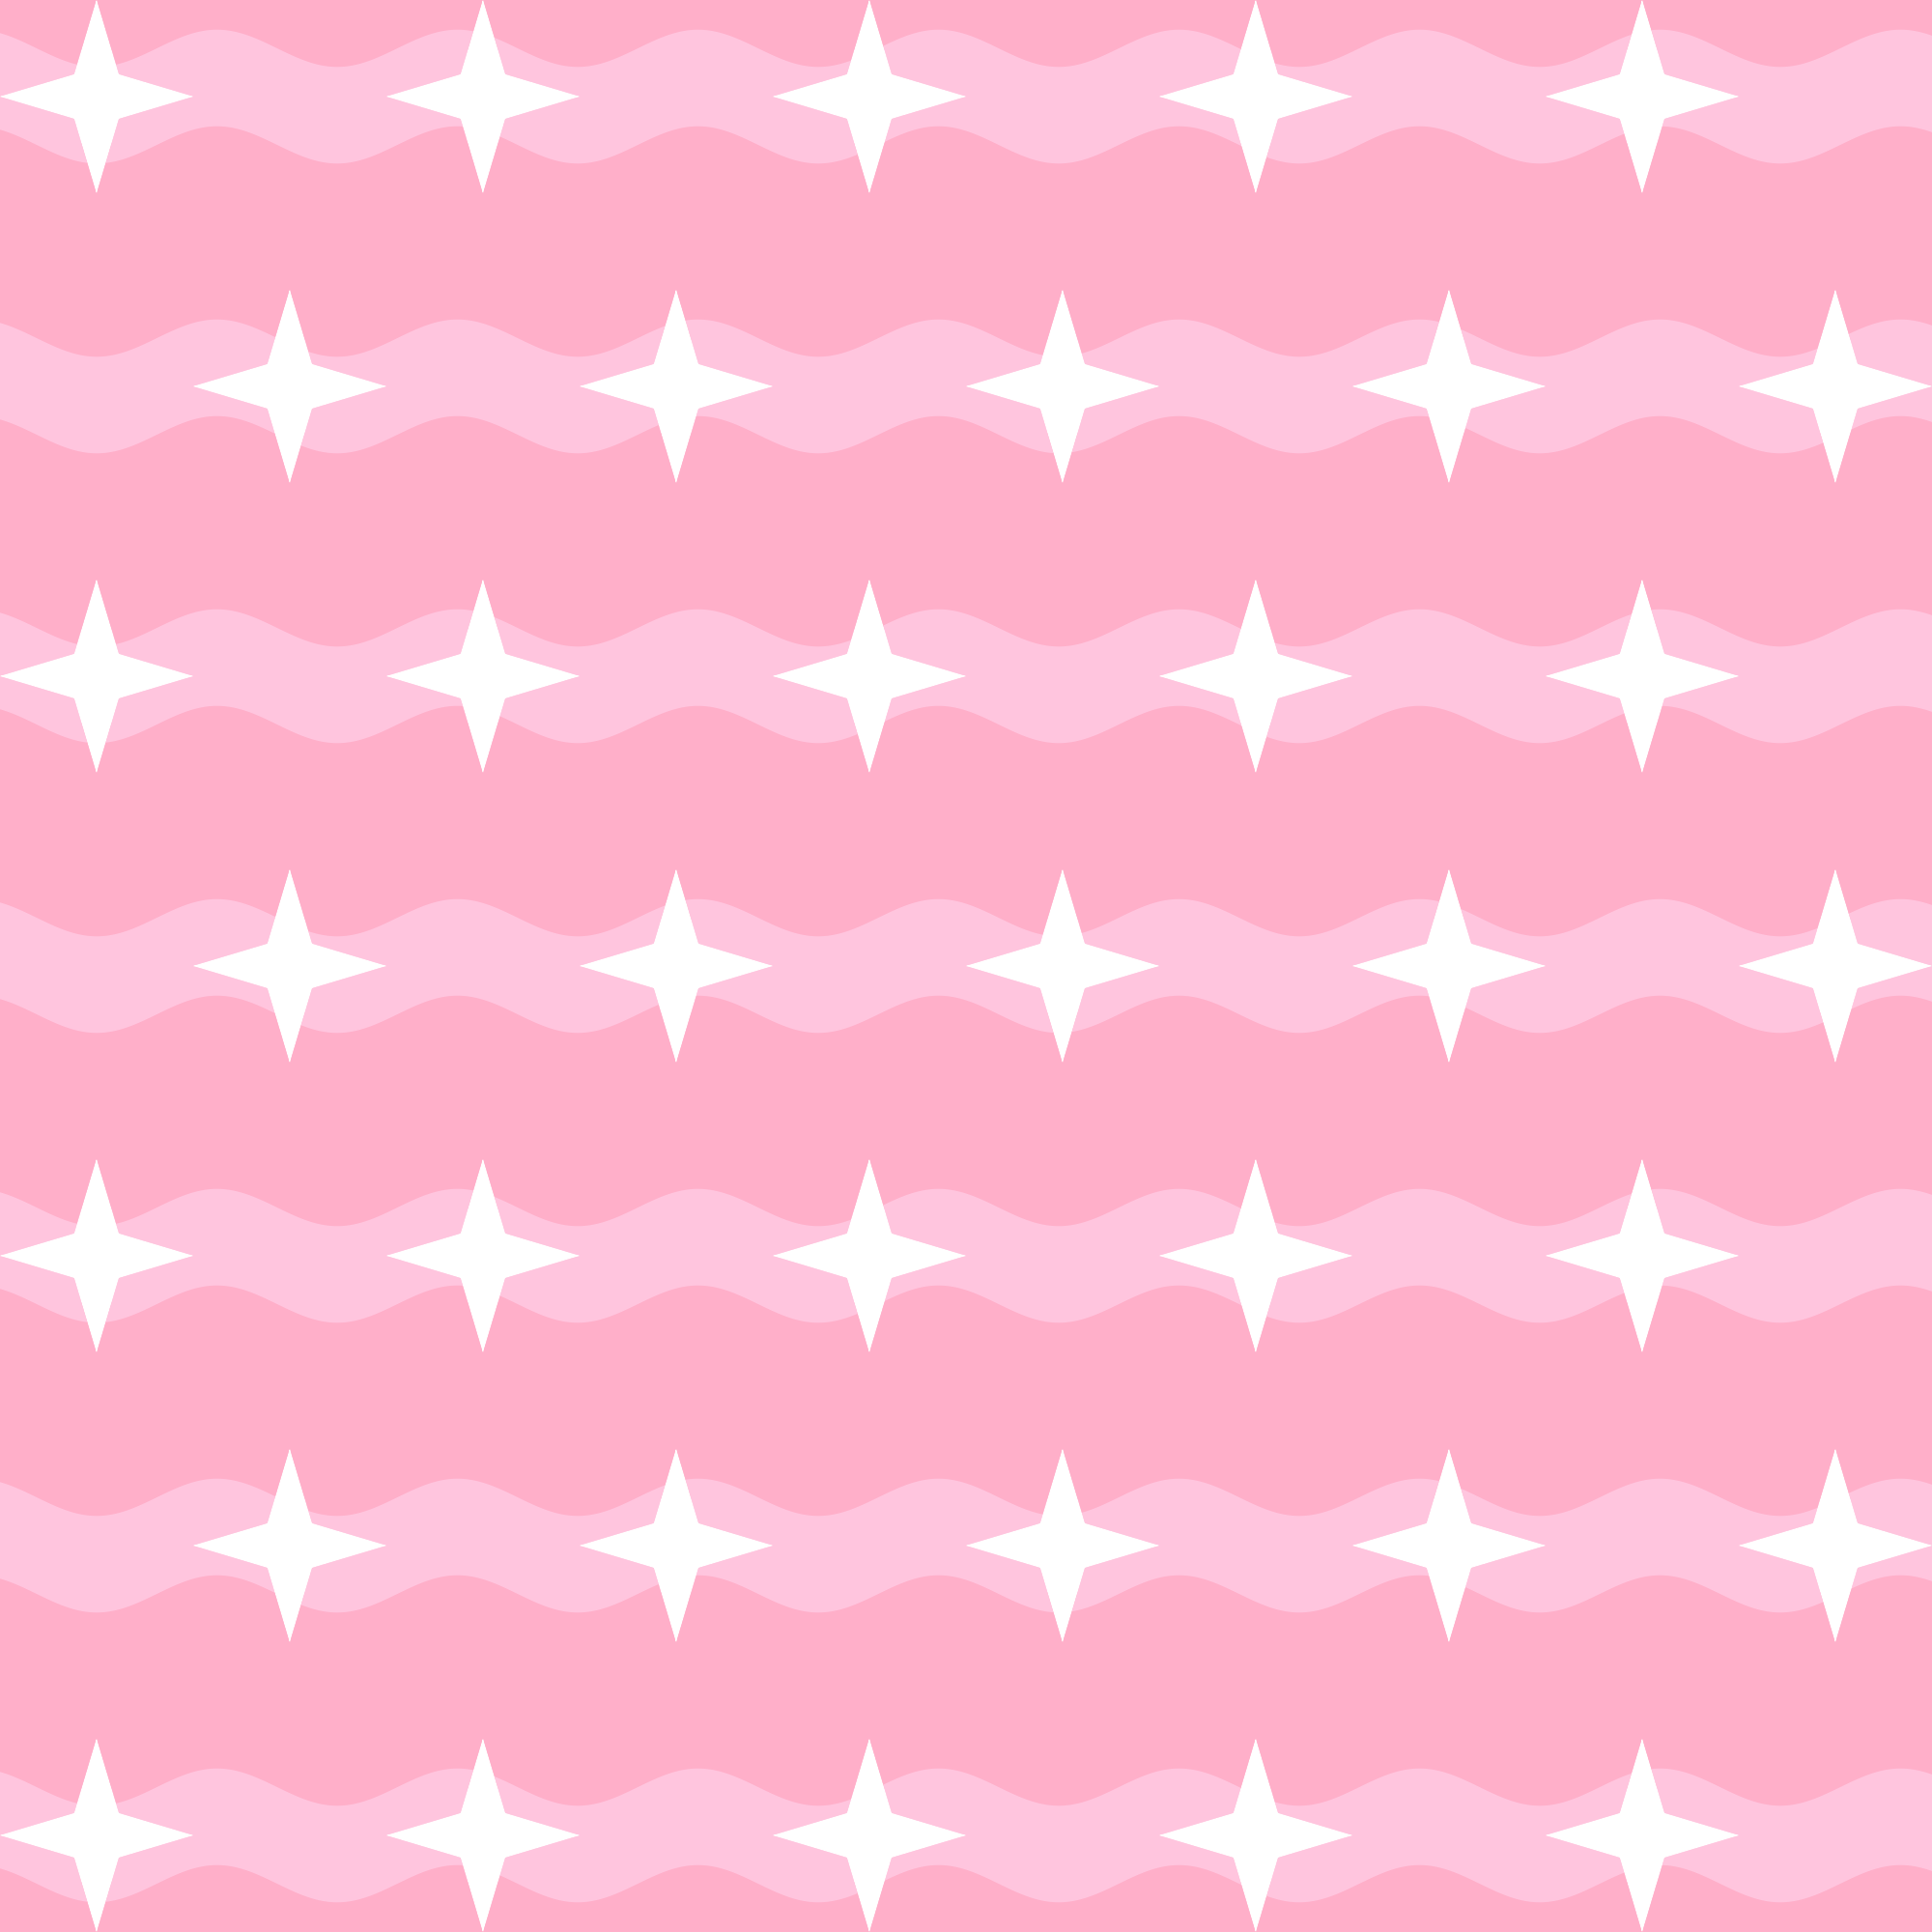 Em um fundo rosa, há faixas onduladas de um tom de rosa mais claro, as quais são repletas de estrelas brancas de quatro pontas dispostas em linhas retas maiores do que tais faixas.